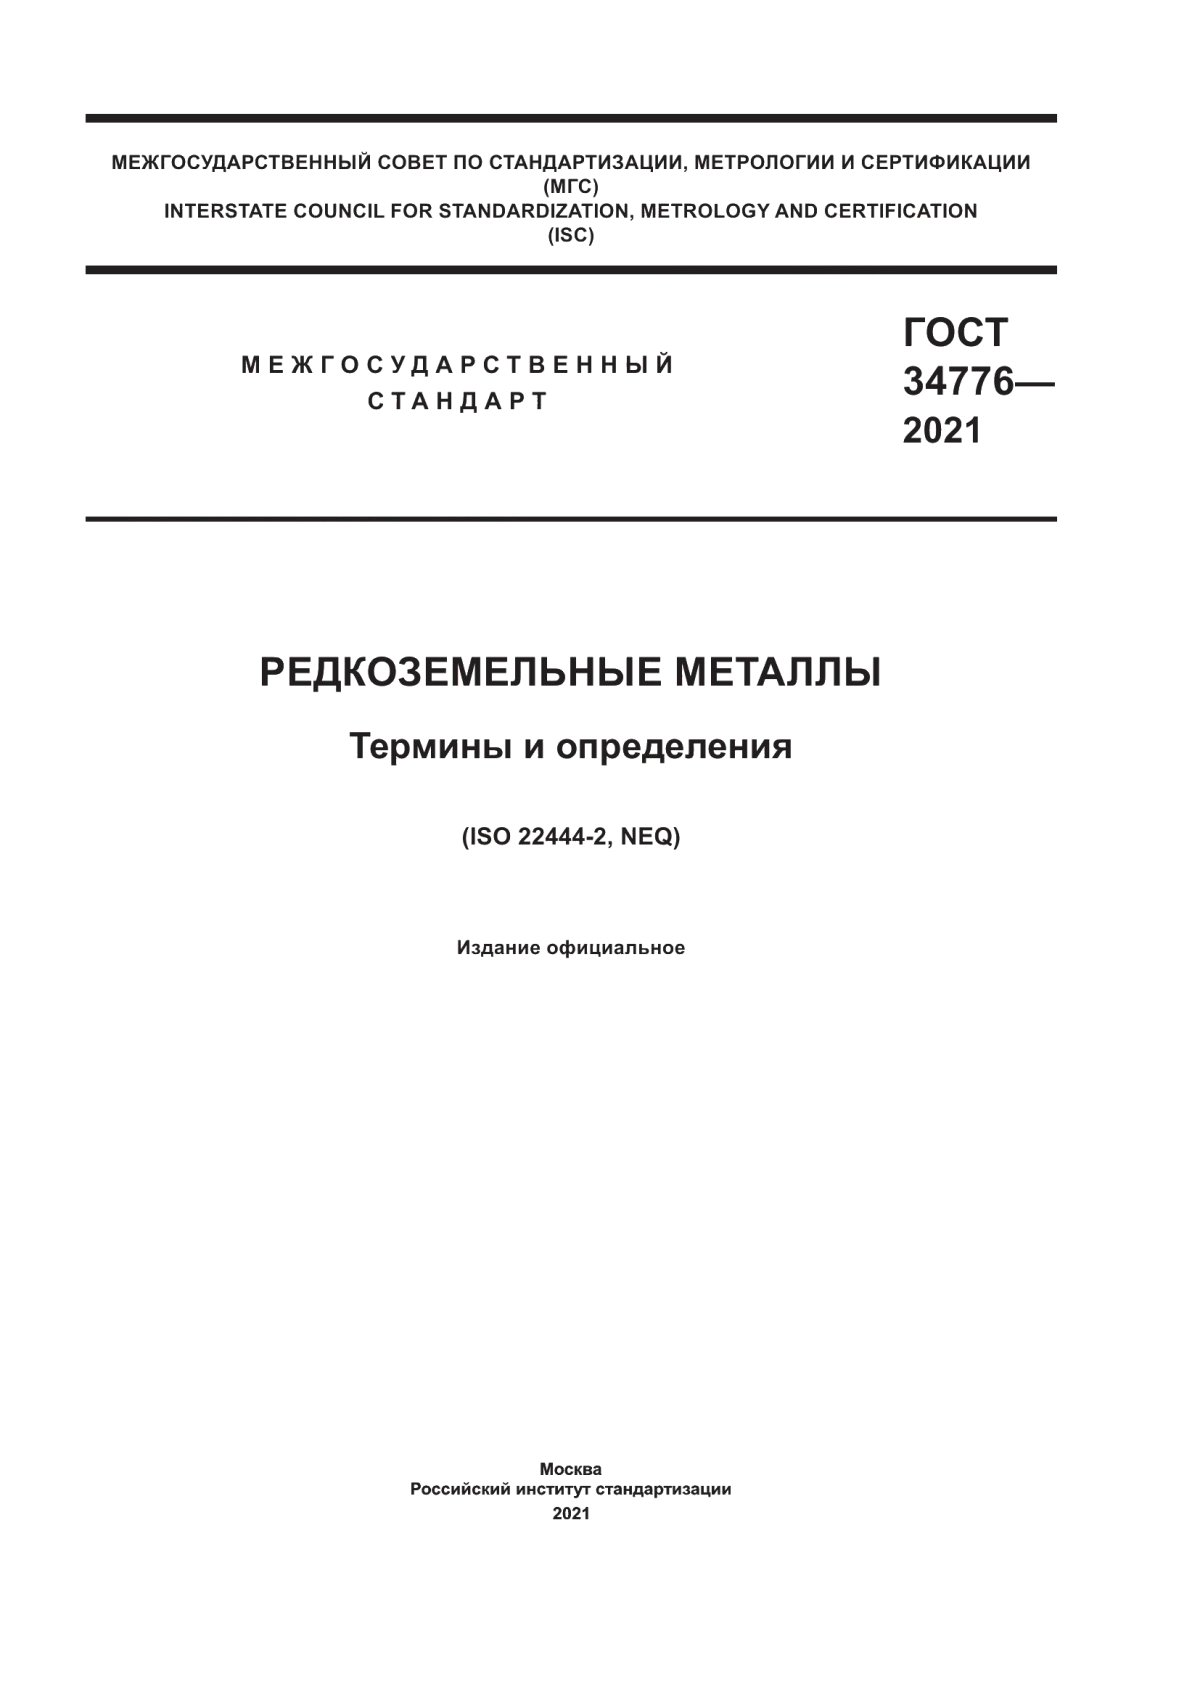 ГОСТ 34776-2021 Редкоземельные металлы. Термины и определения